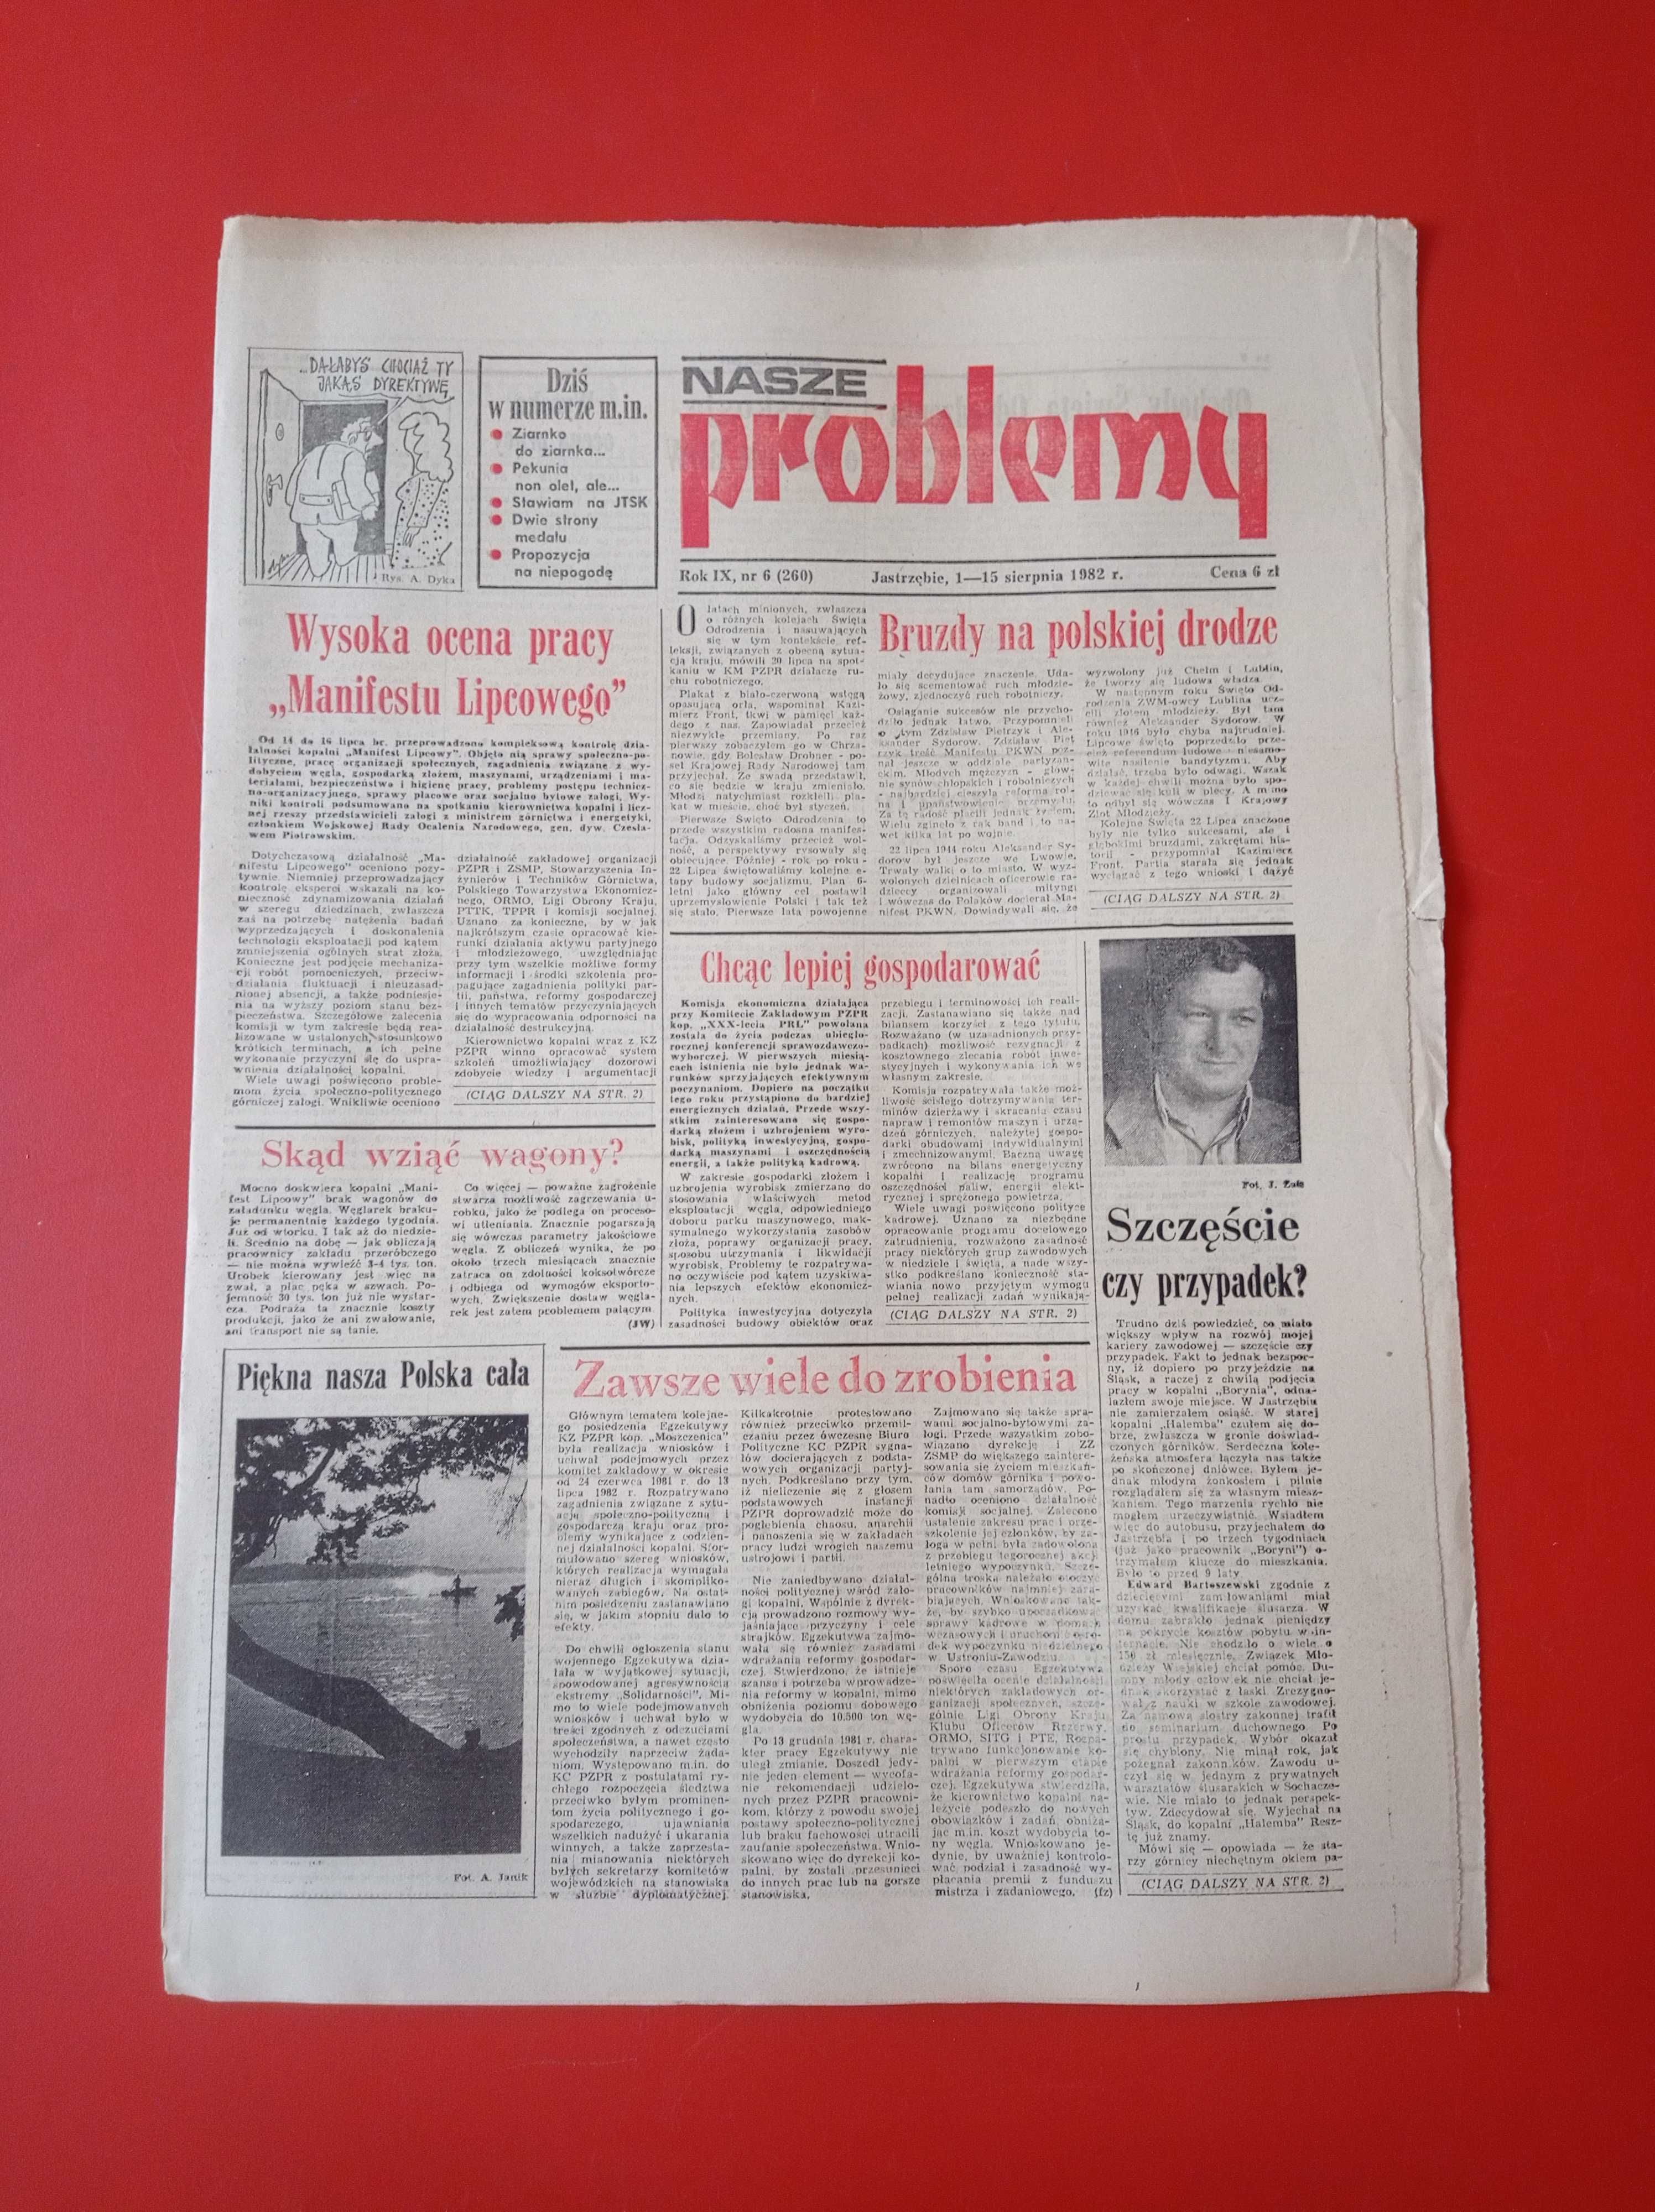 Nasze problemy, Jastrzębie, nr 6, 1-15 sierpnia 1982